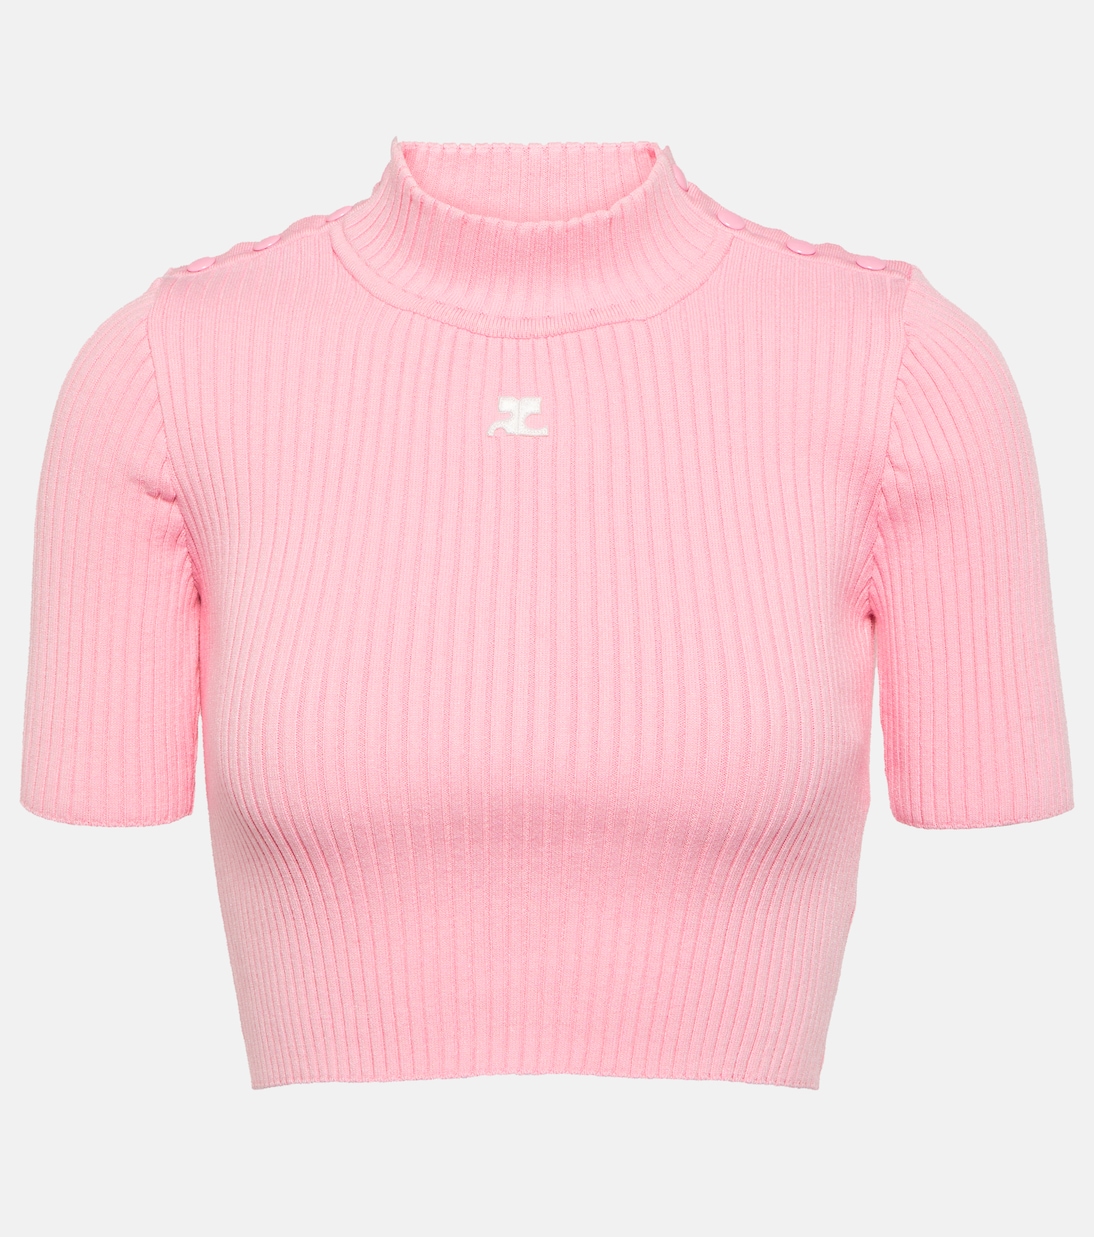 Укороченный свитер ребристой вязки Courrèges, розовый